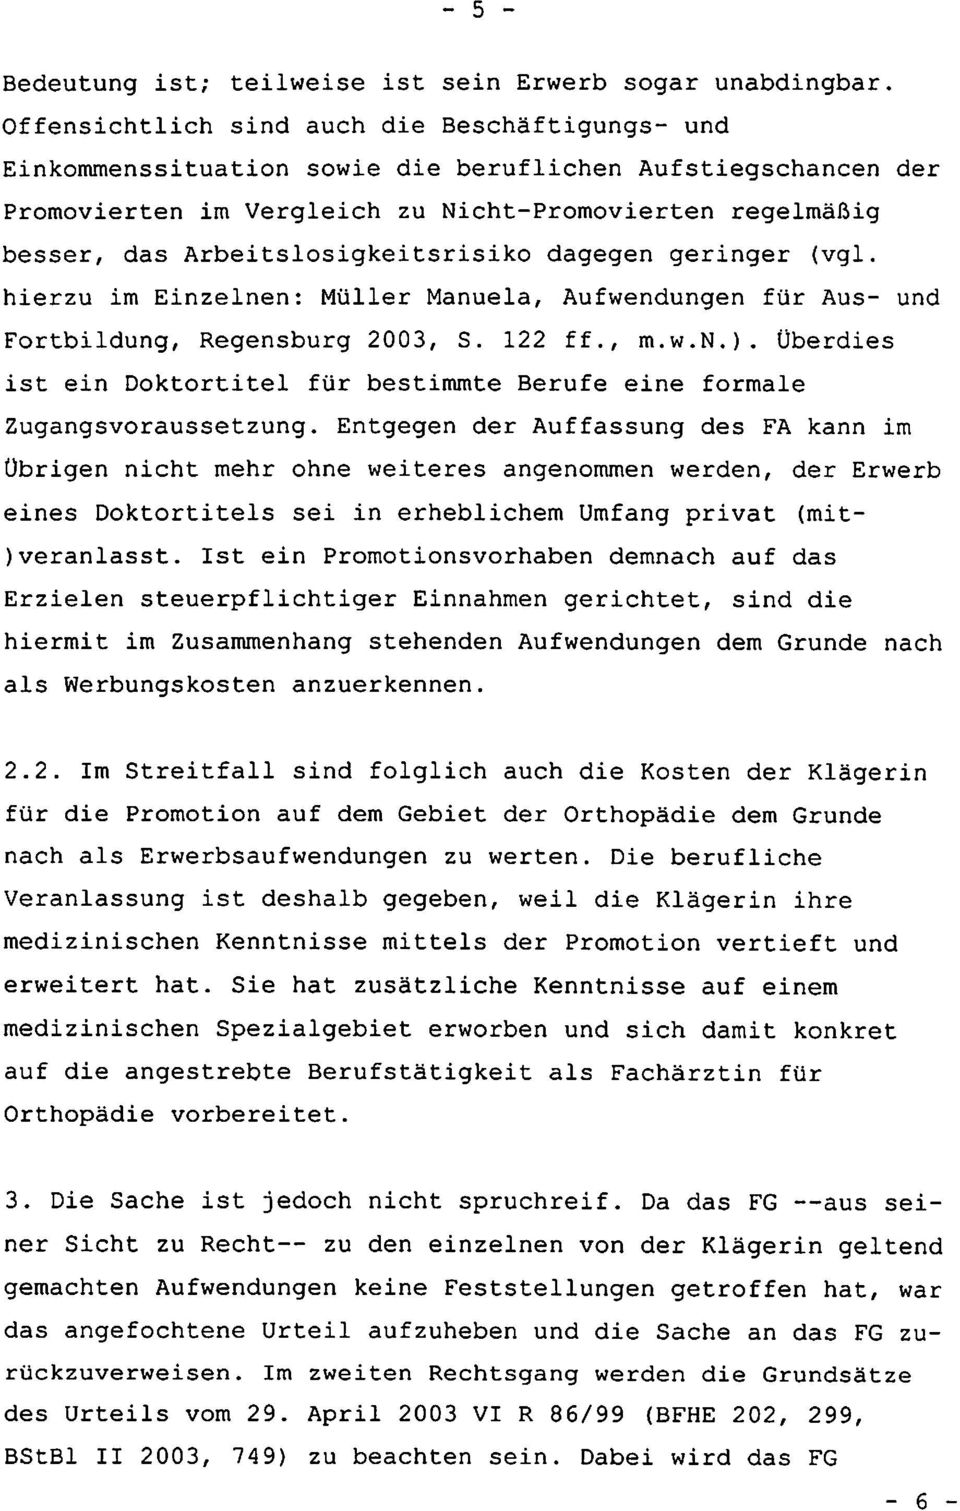 Arbeitslosigkeitsrisiko dagegen geringer (vgl. hierzu im Einzelnen: Müller Manuela, Aufwendungen für Aus- und Fortbildung, Regensburg 2003, S. 122 ff., m.w.n.).